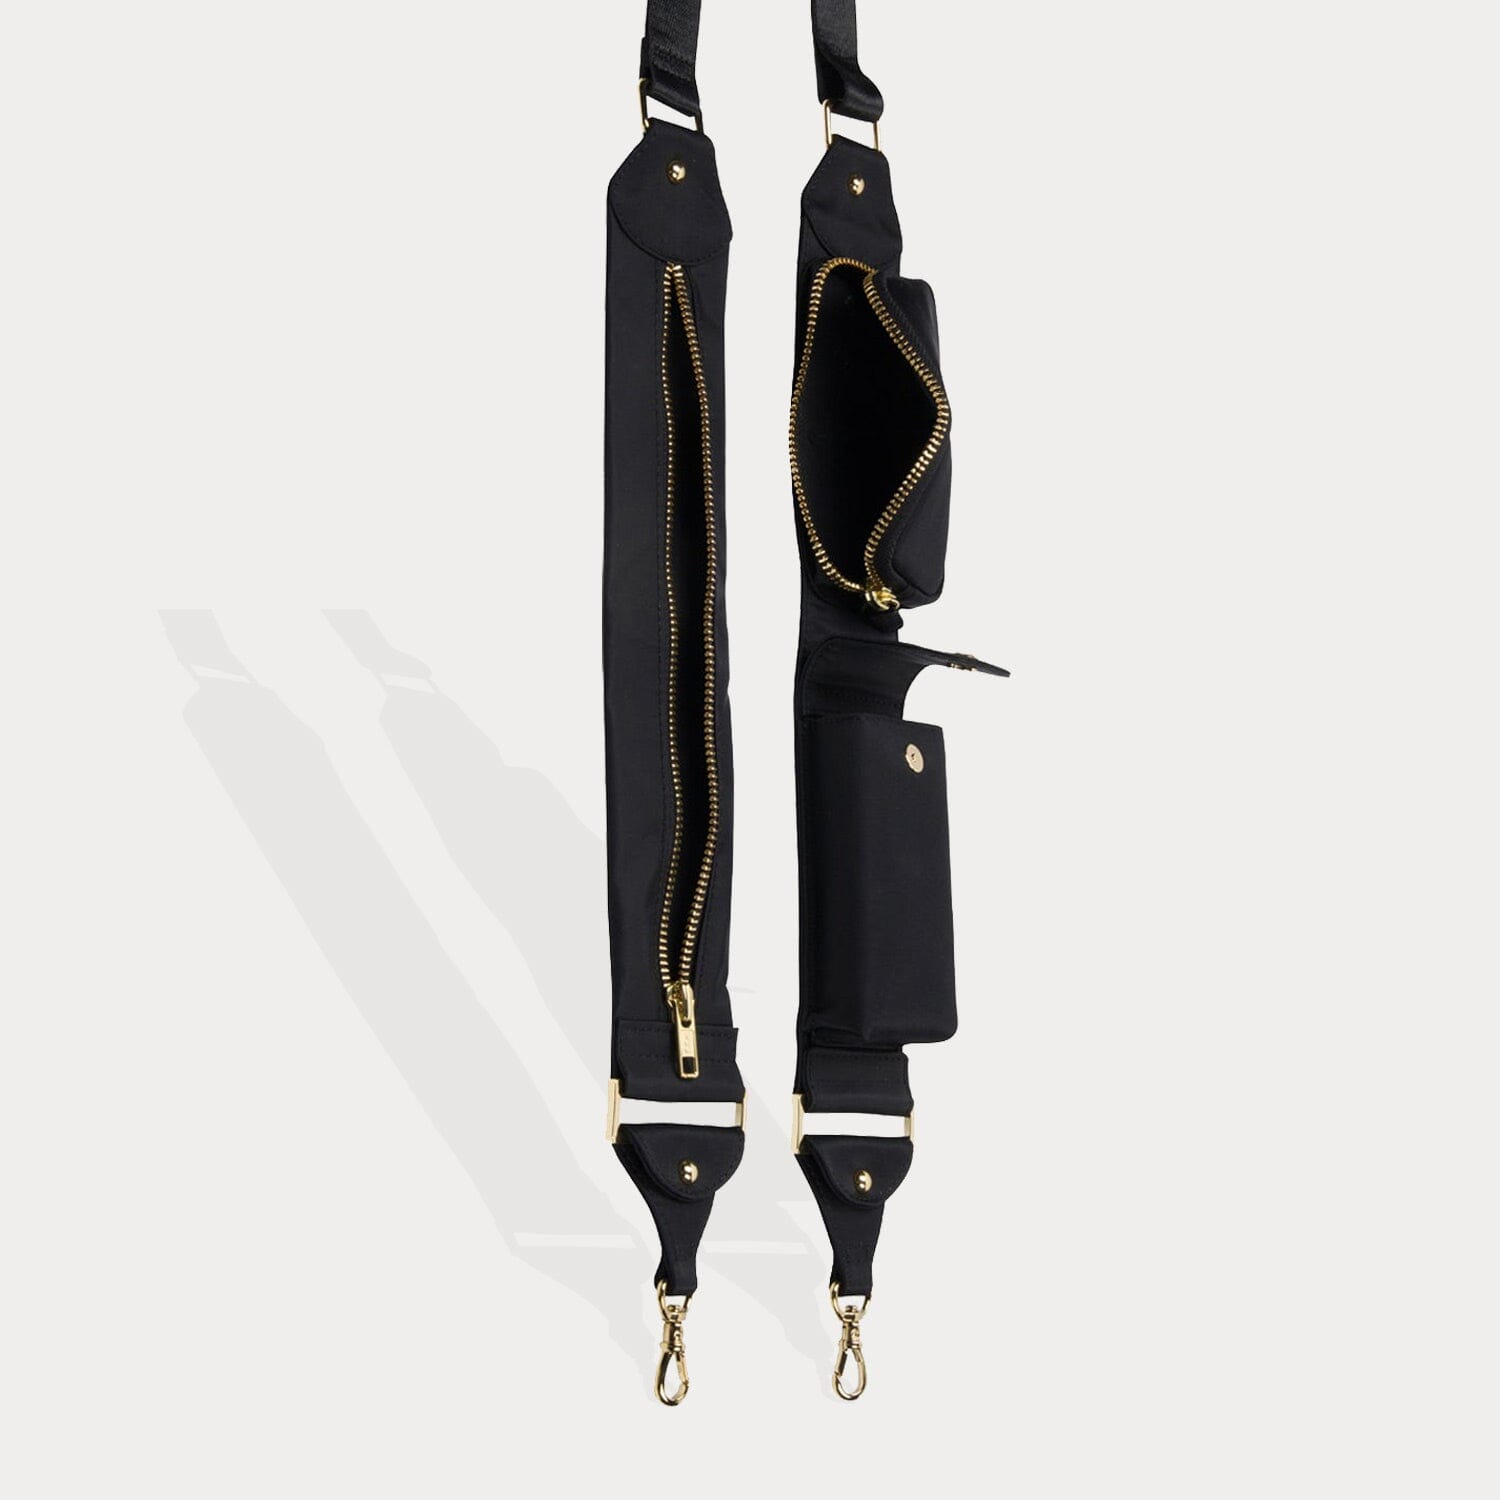 Billie Nylon Crossbody Utility Strap Only - Black/Gold Fashion Strap Bandolier 